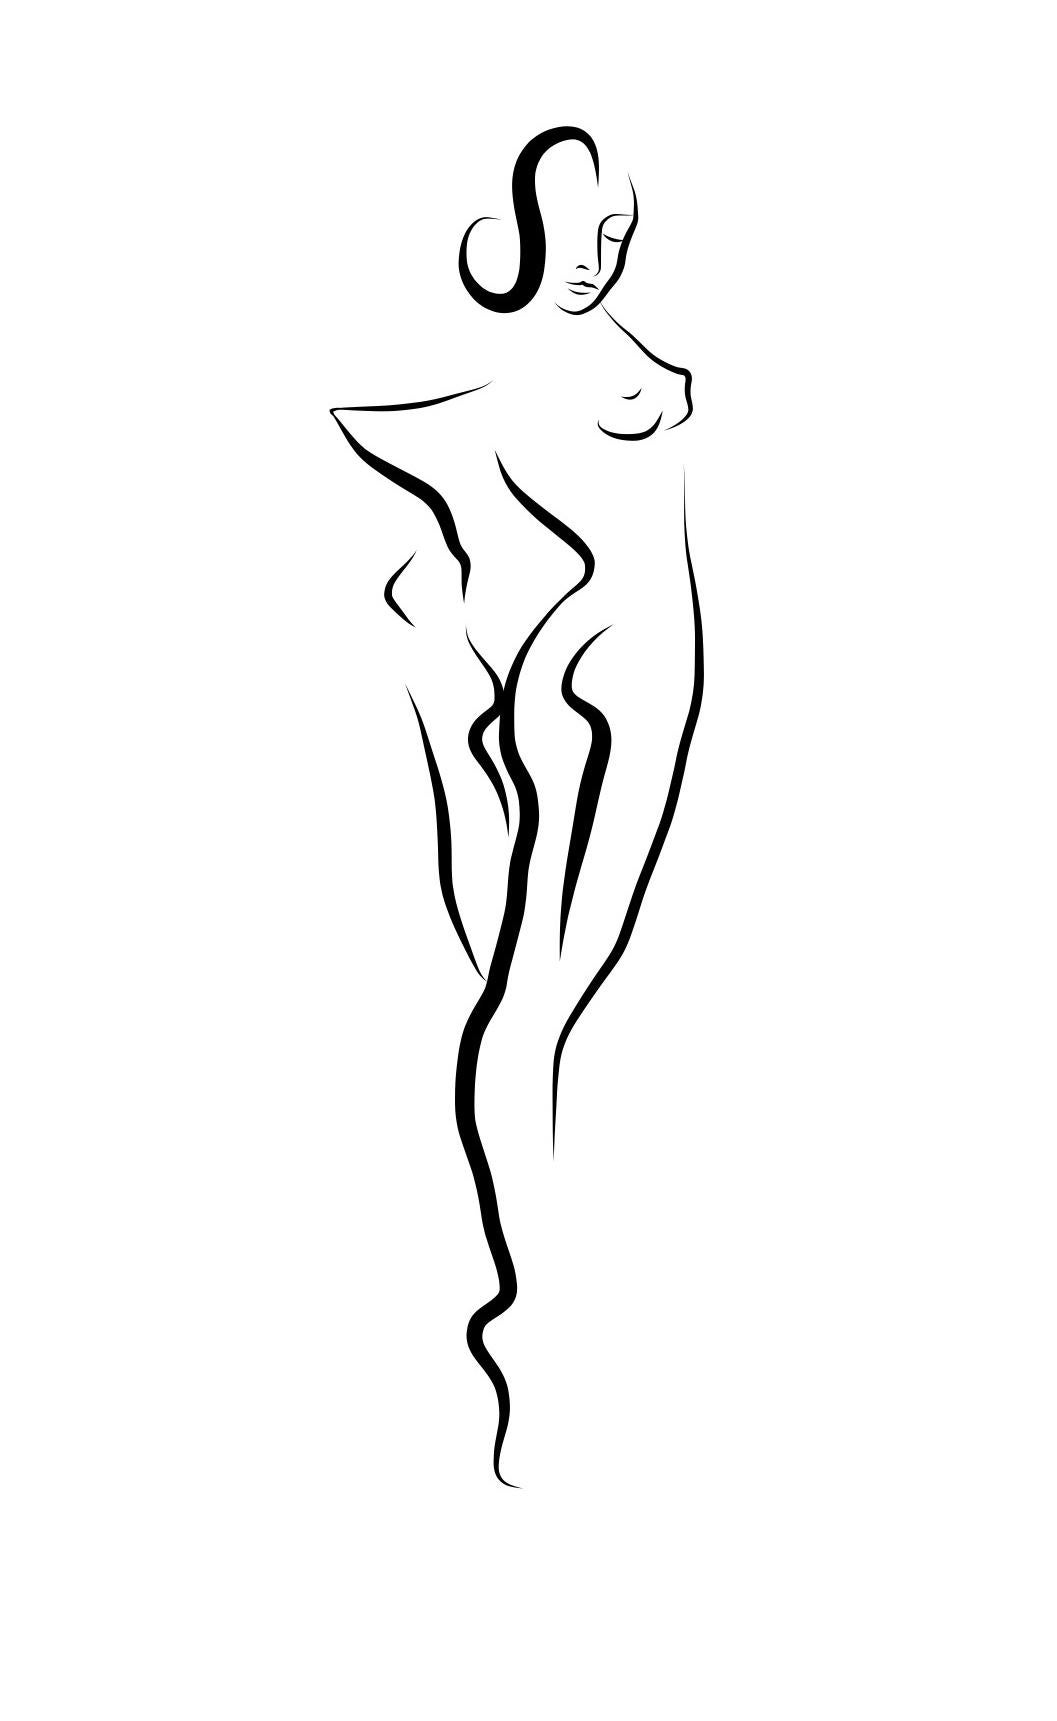 Michael Binkley Nude Print - Haiku #2, 1/50 - Digital Vector Drawing Standing Female Nude Woman Figure